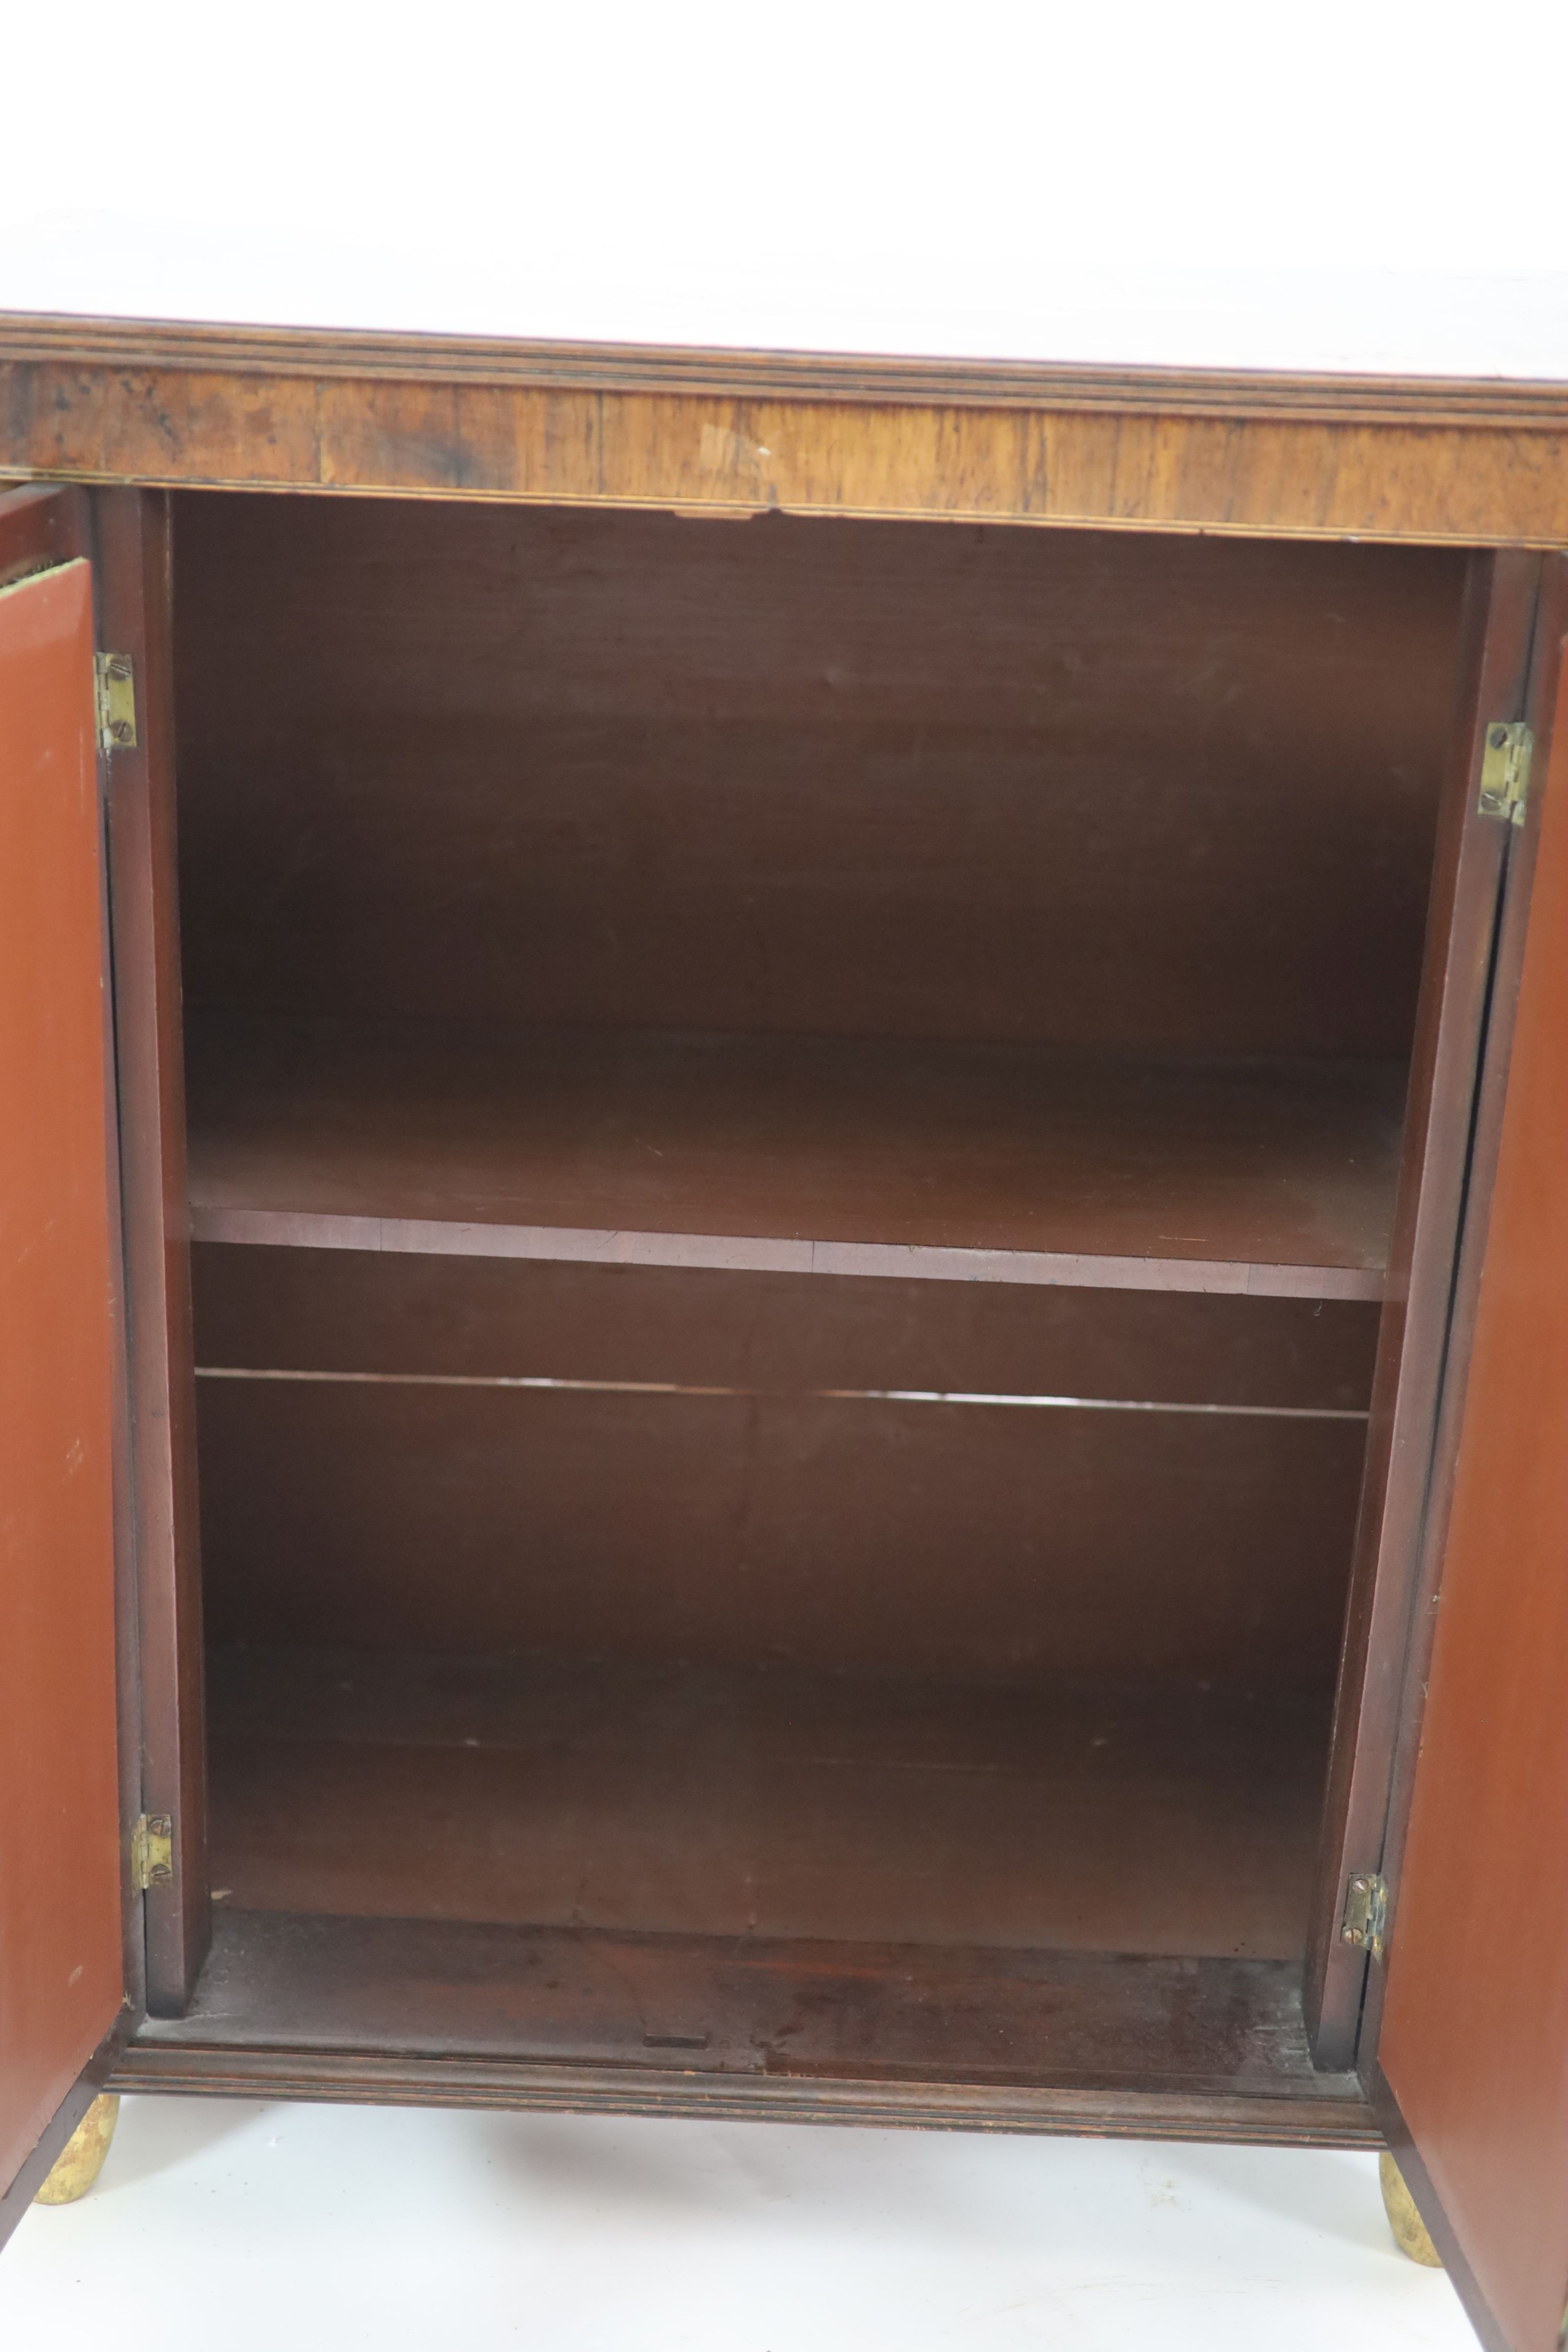 A Regency crossbanded mahogany dwarf bookcase, W.74cm D.40cm H.87cm